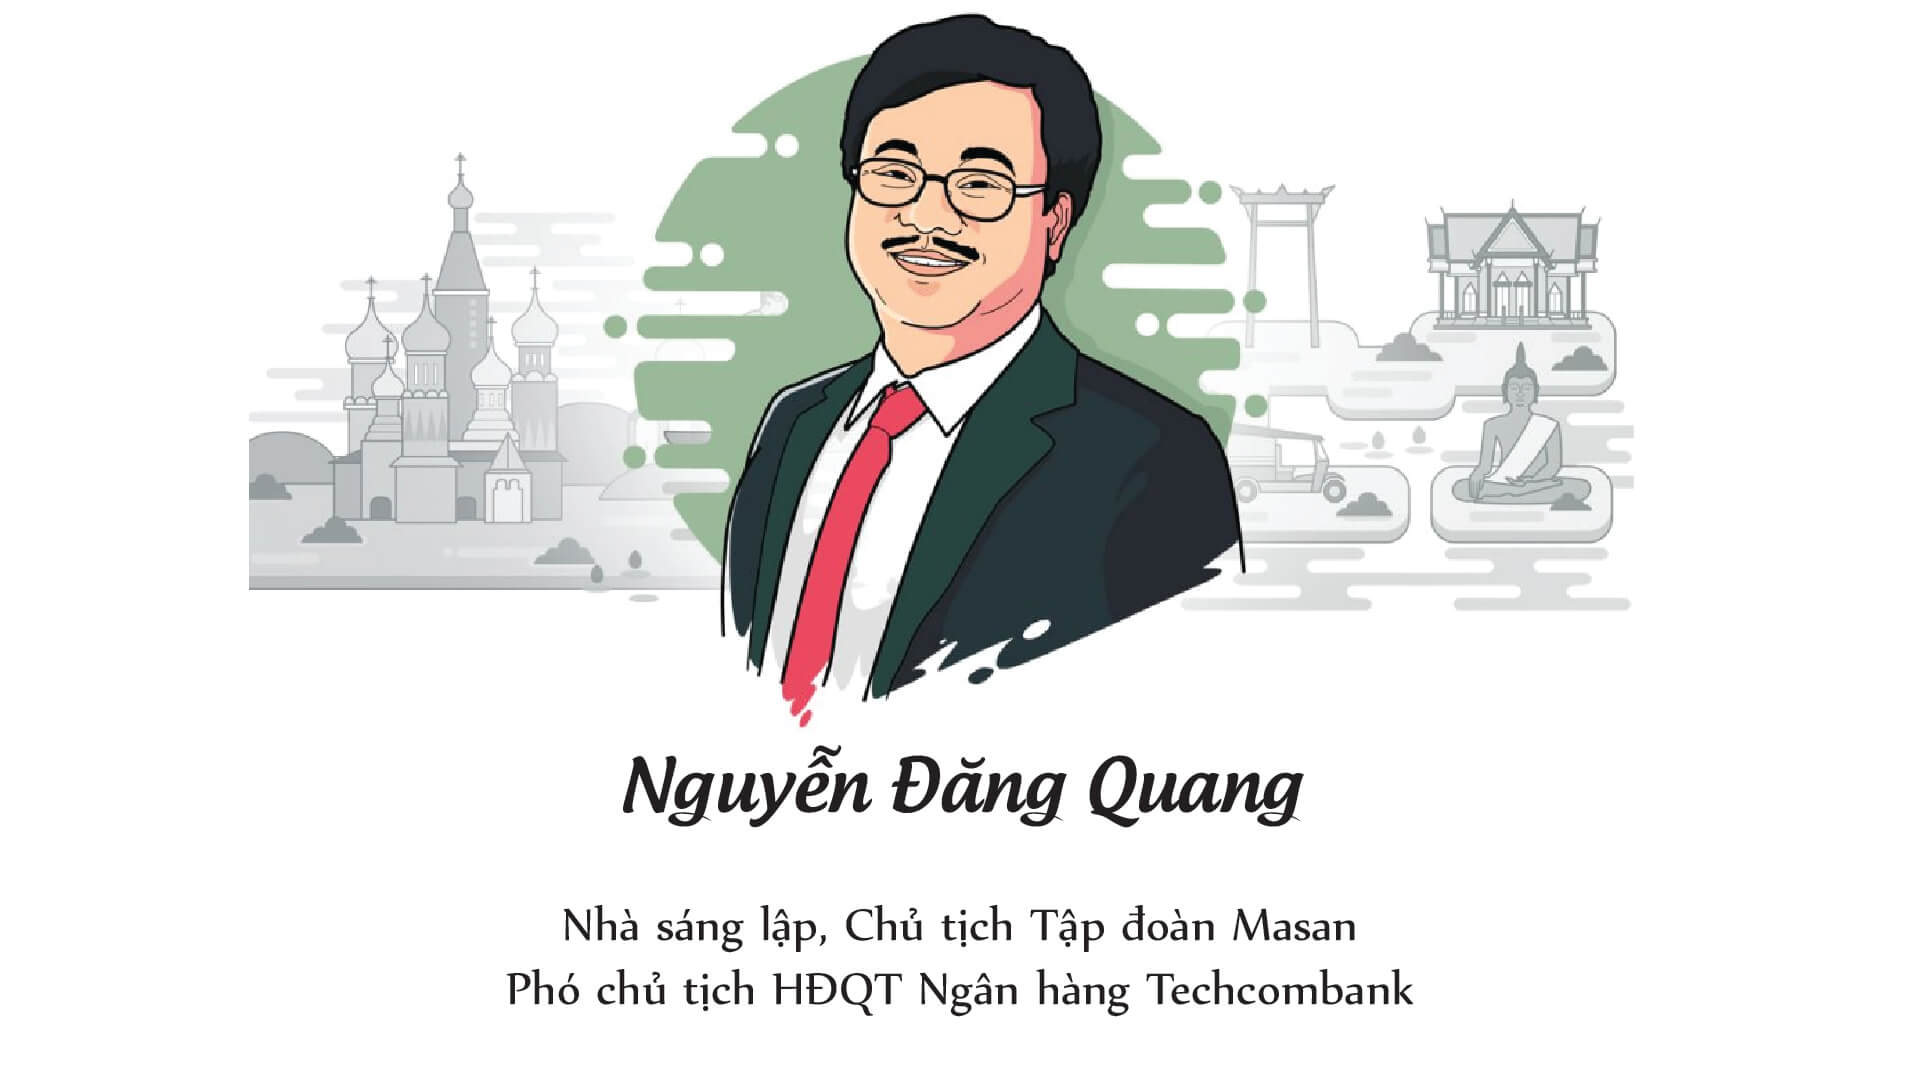 Sự nghiệp chung của ông Nguyễn Đăng Quang